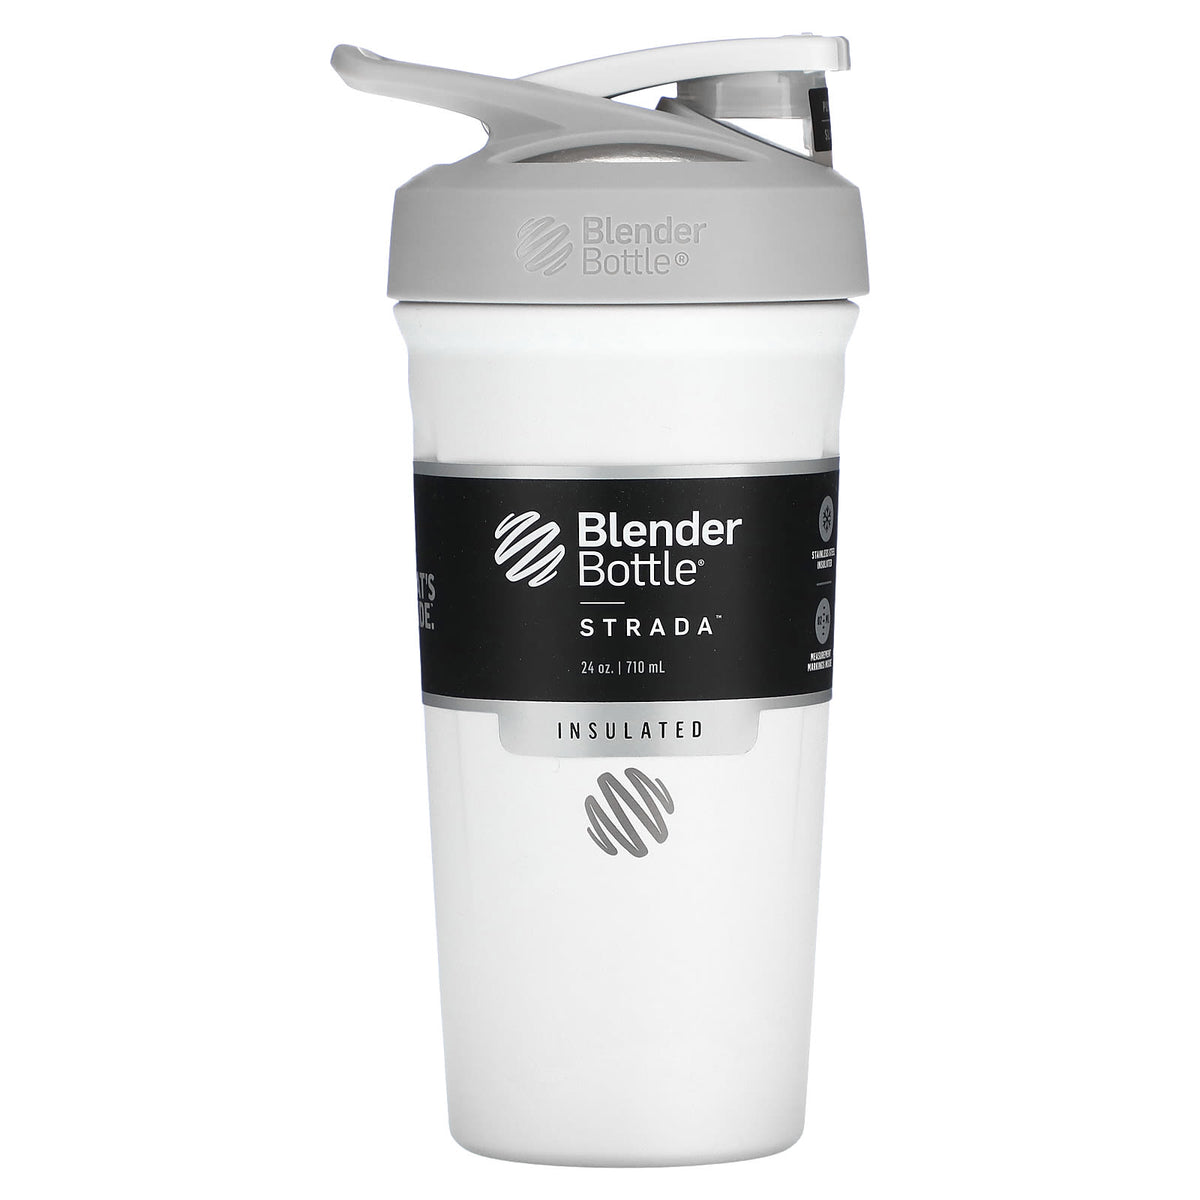 BlenderBottle Pro Series 24oz Shaker